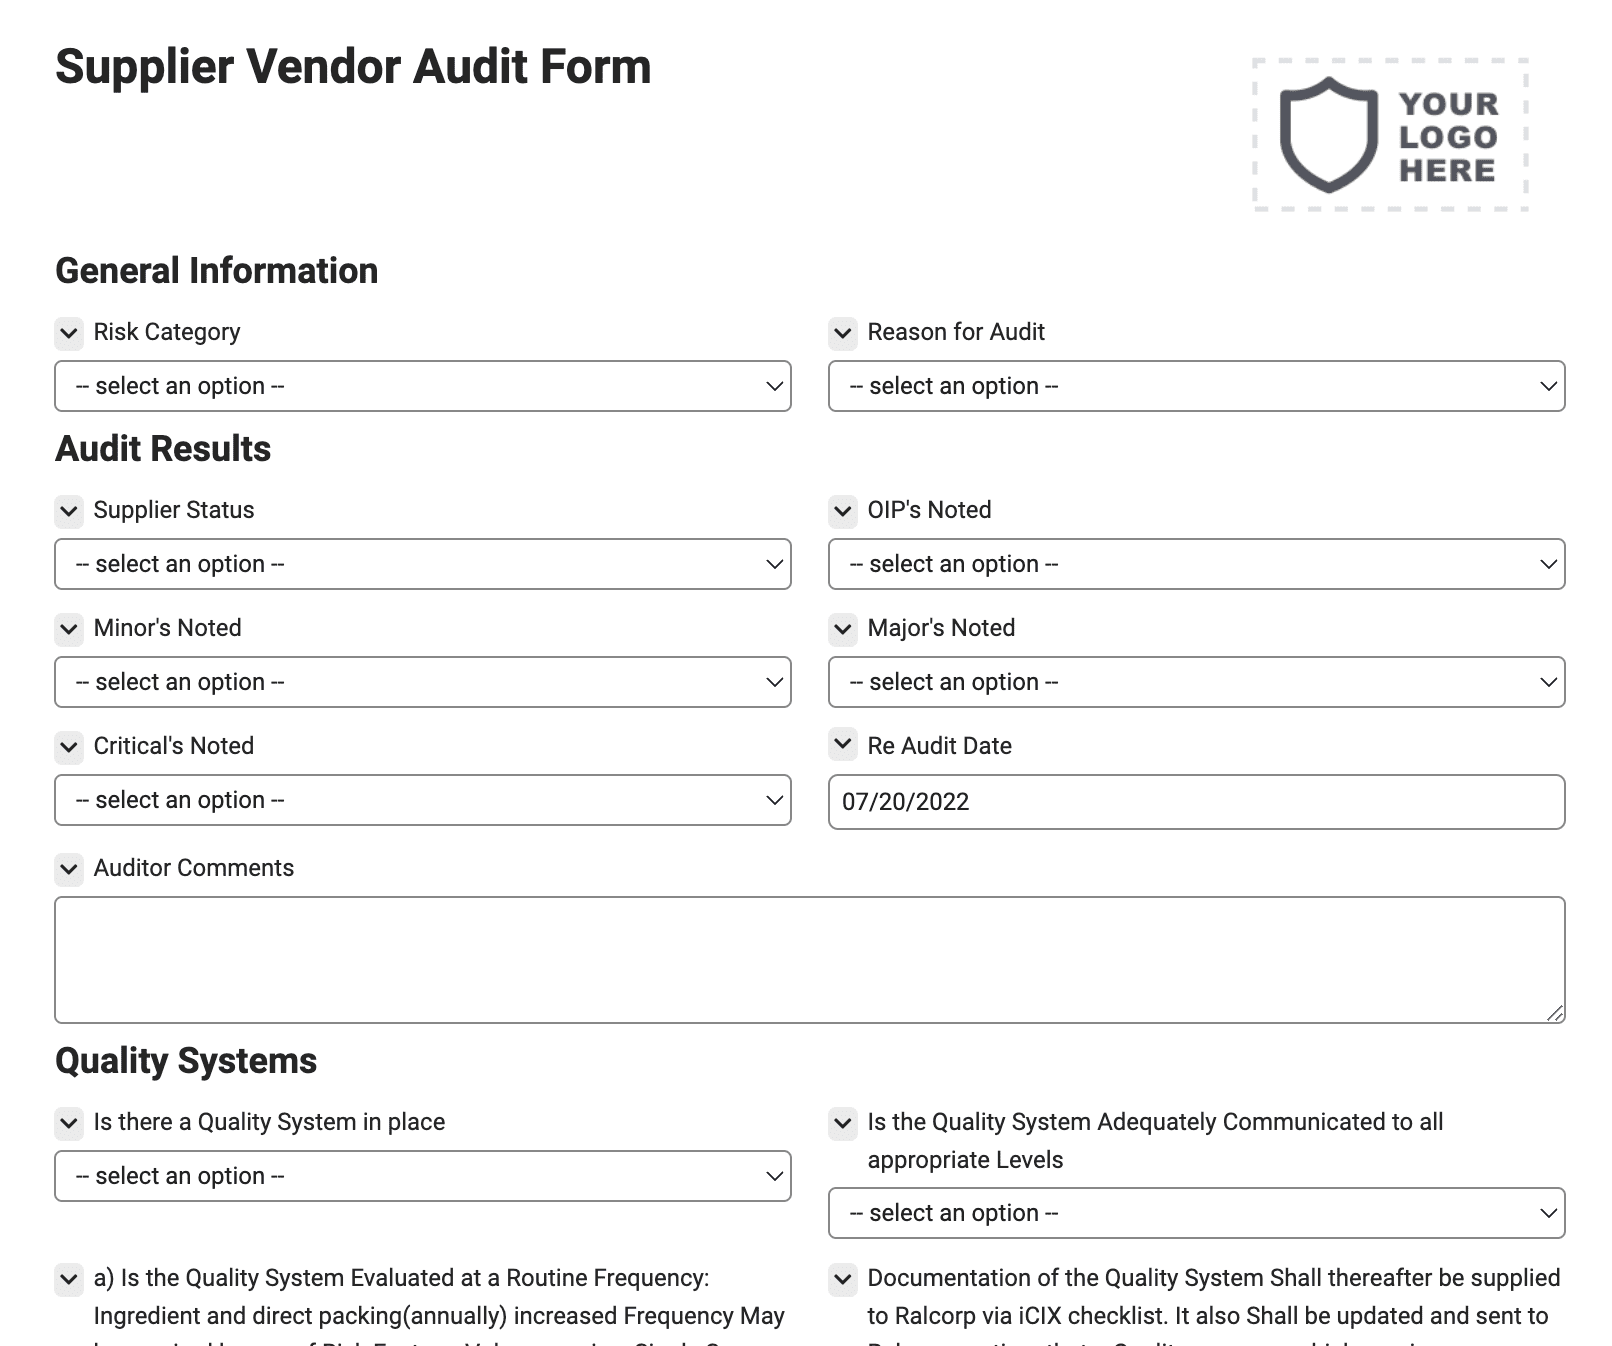 Supplier - Vendor Audit Form